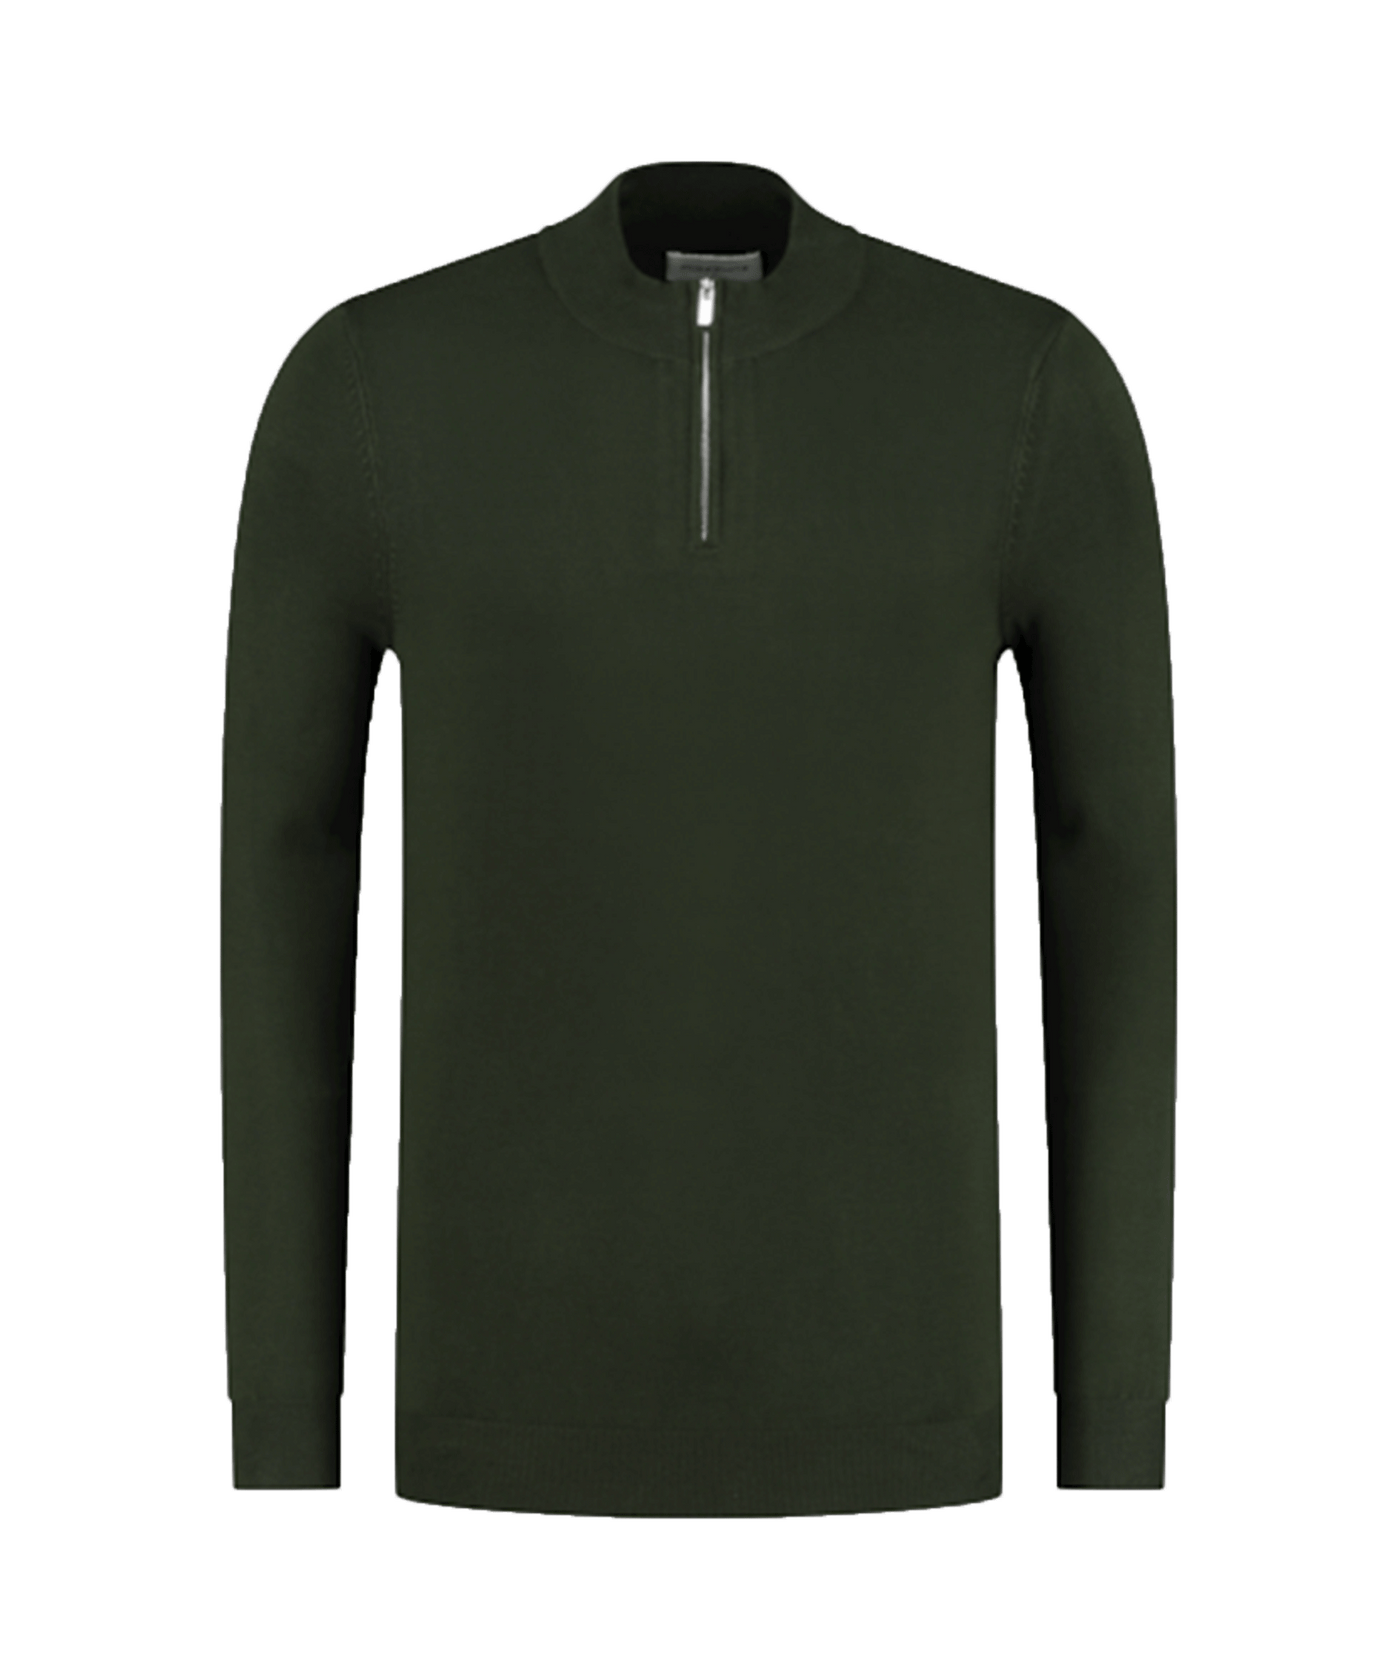 PureWhite - 10804 - Essential Knit Half Zip - Army Green